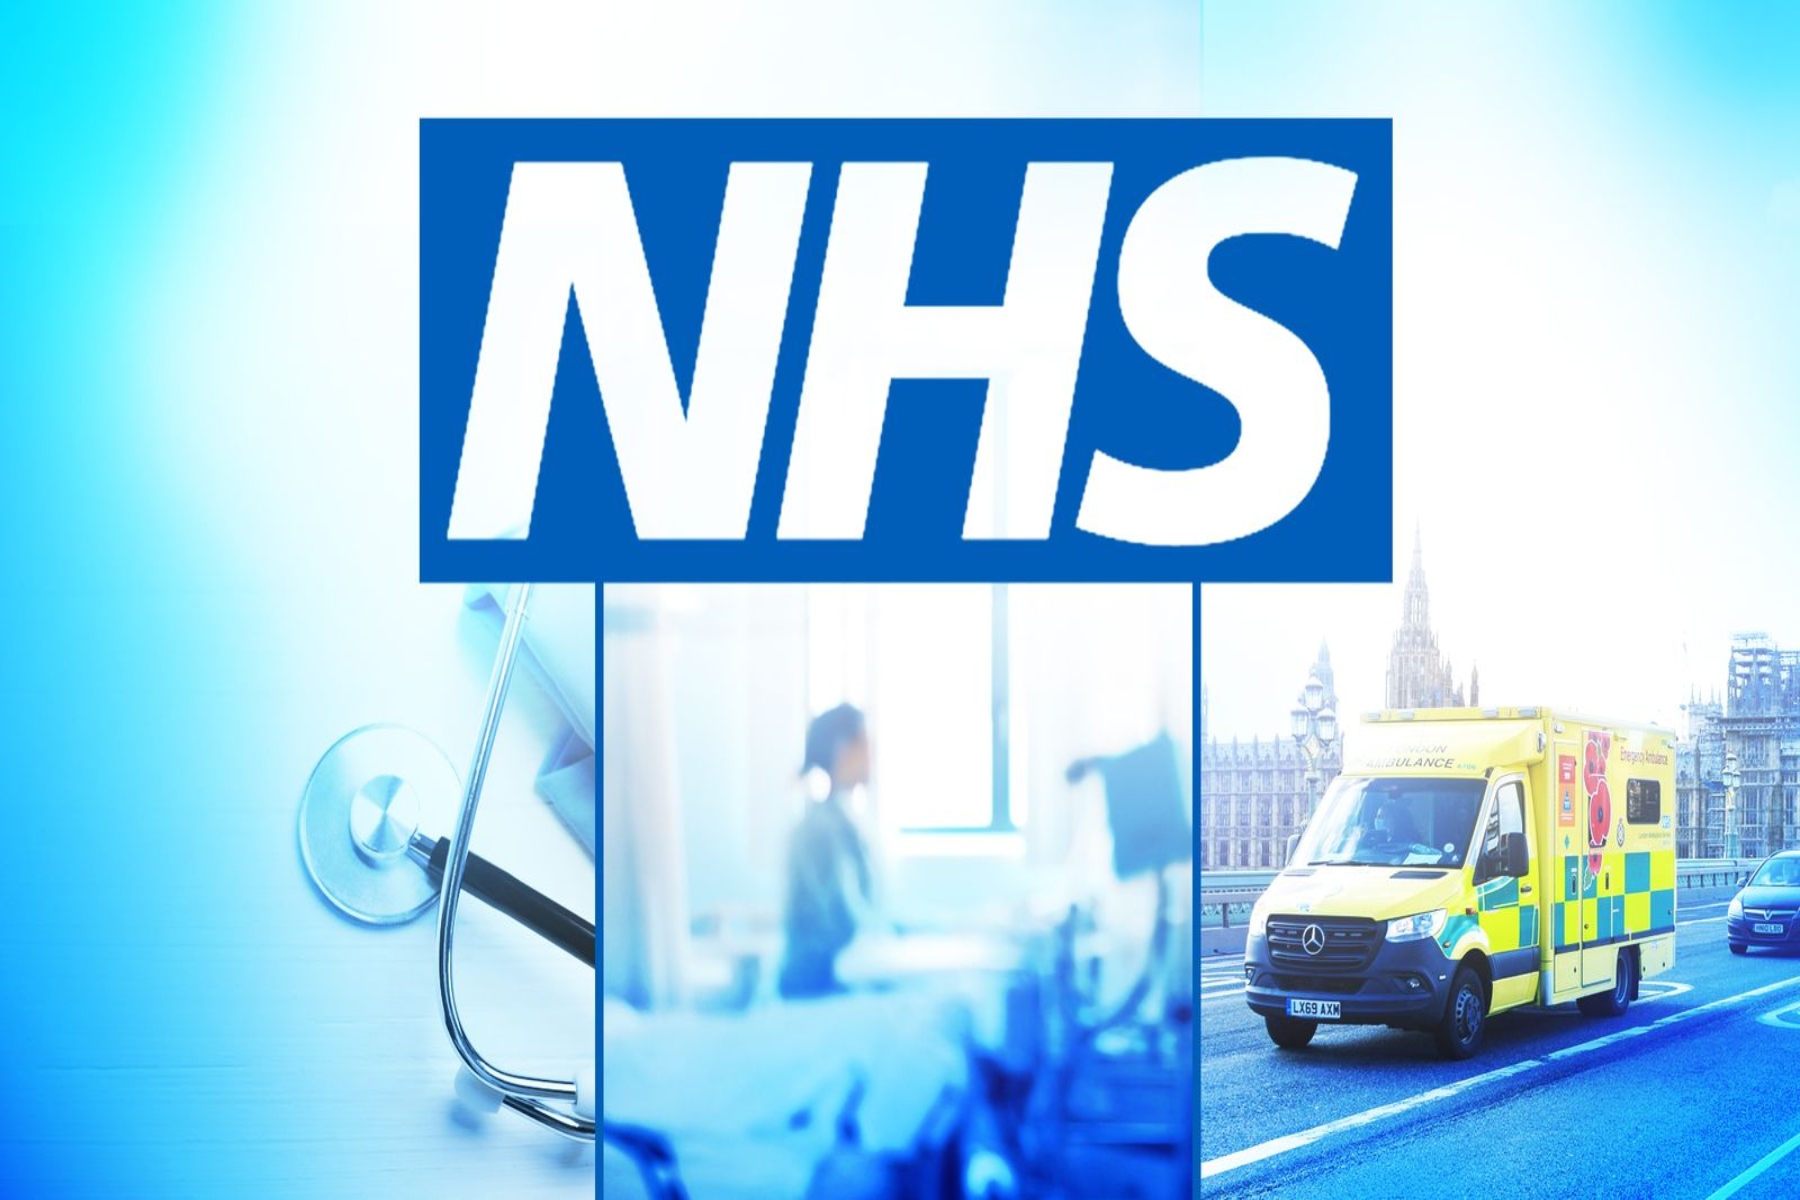 Η λίστα αναμονής του NHS στην Αγγλία αυξάνεται στα 7,75 εκατομμύρια